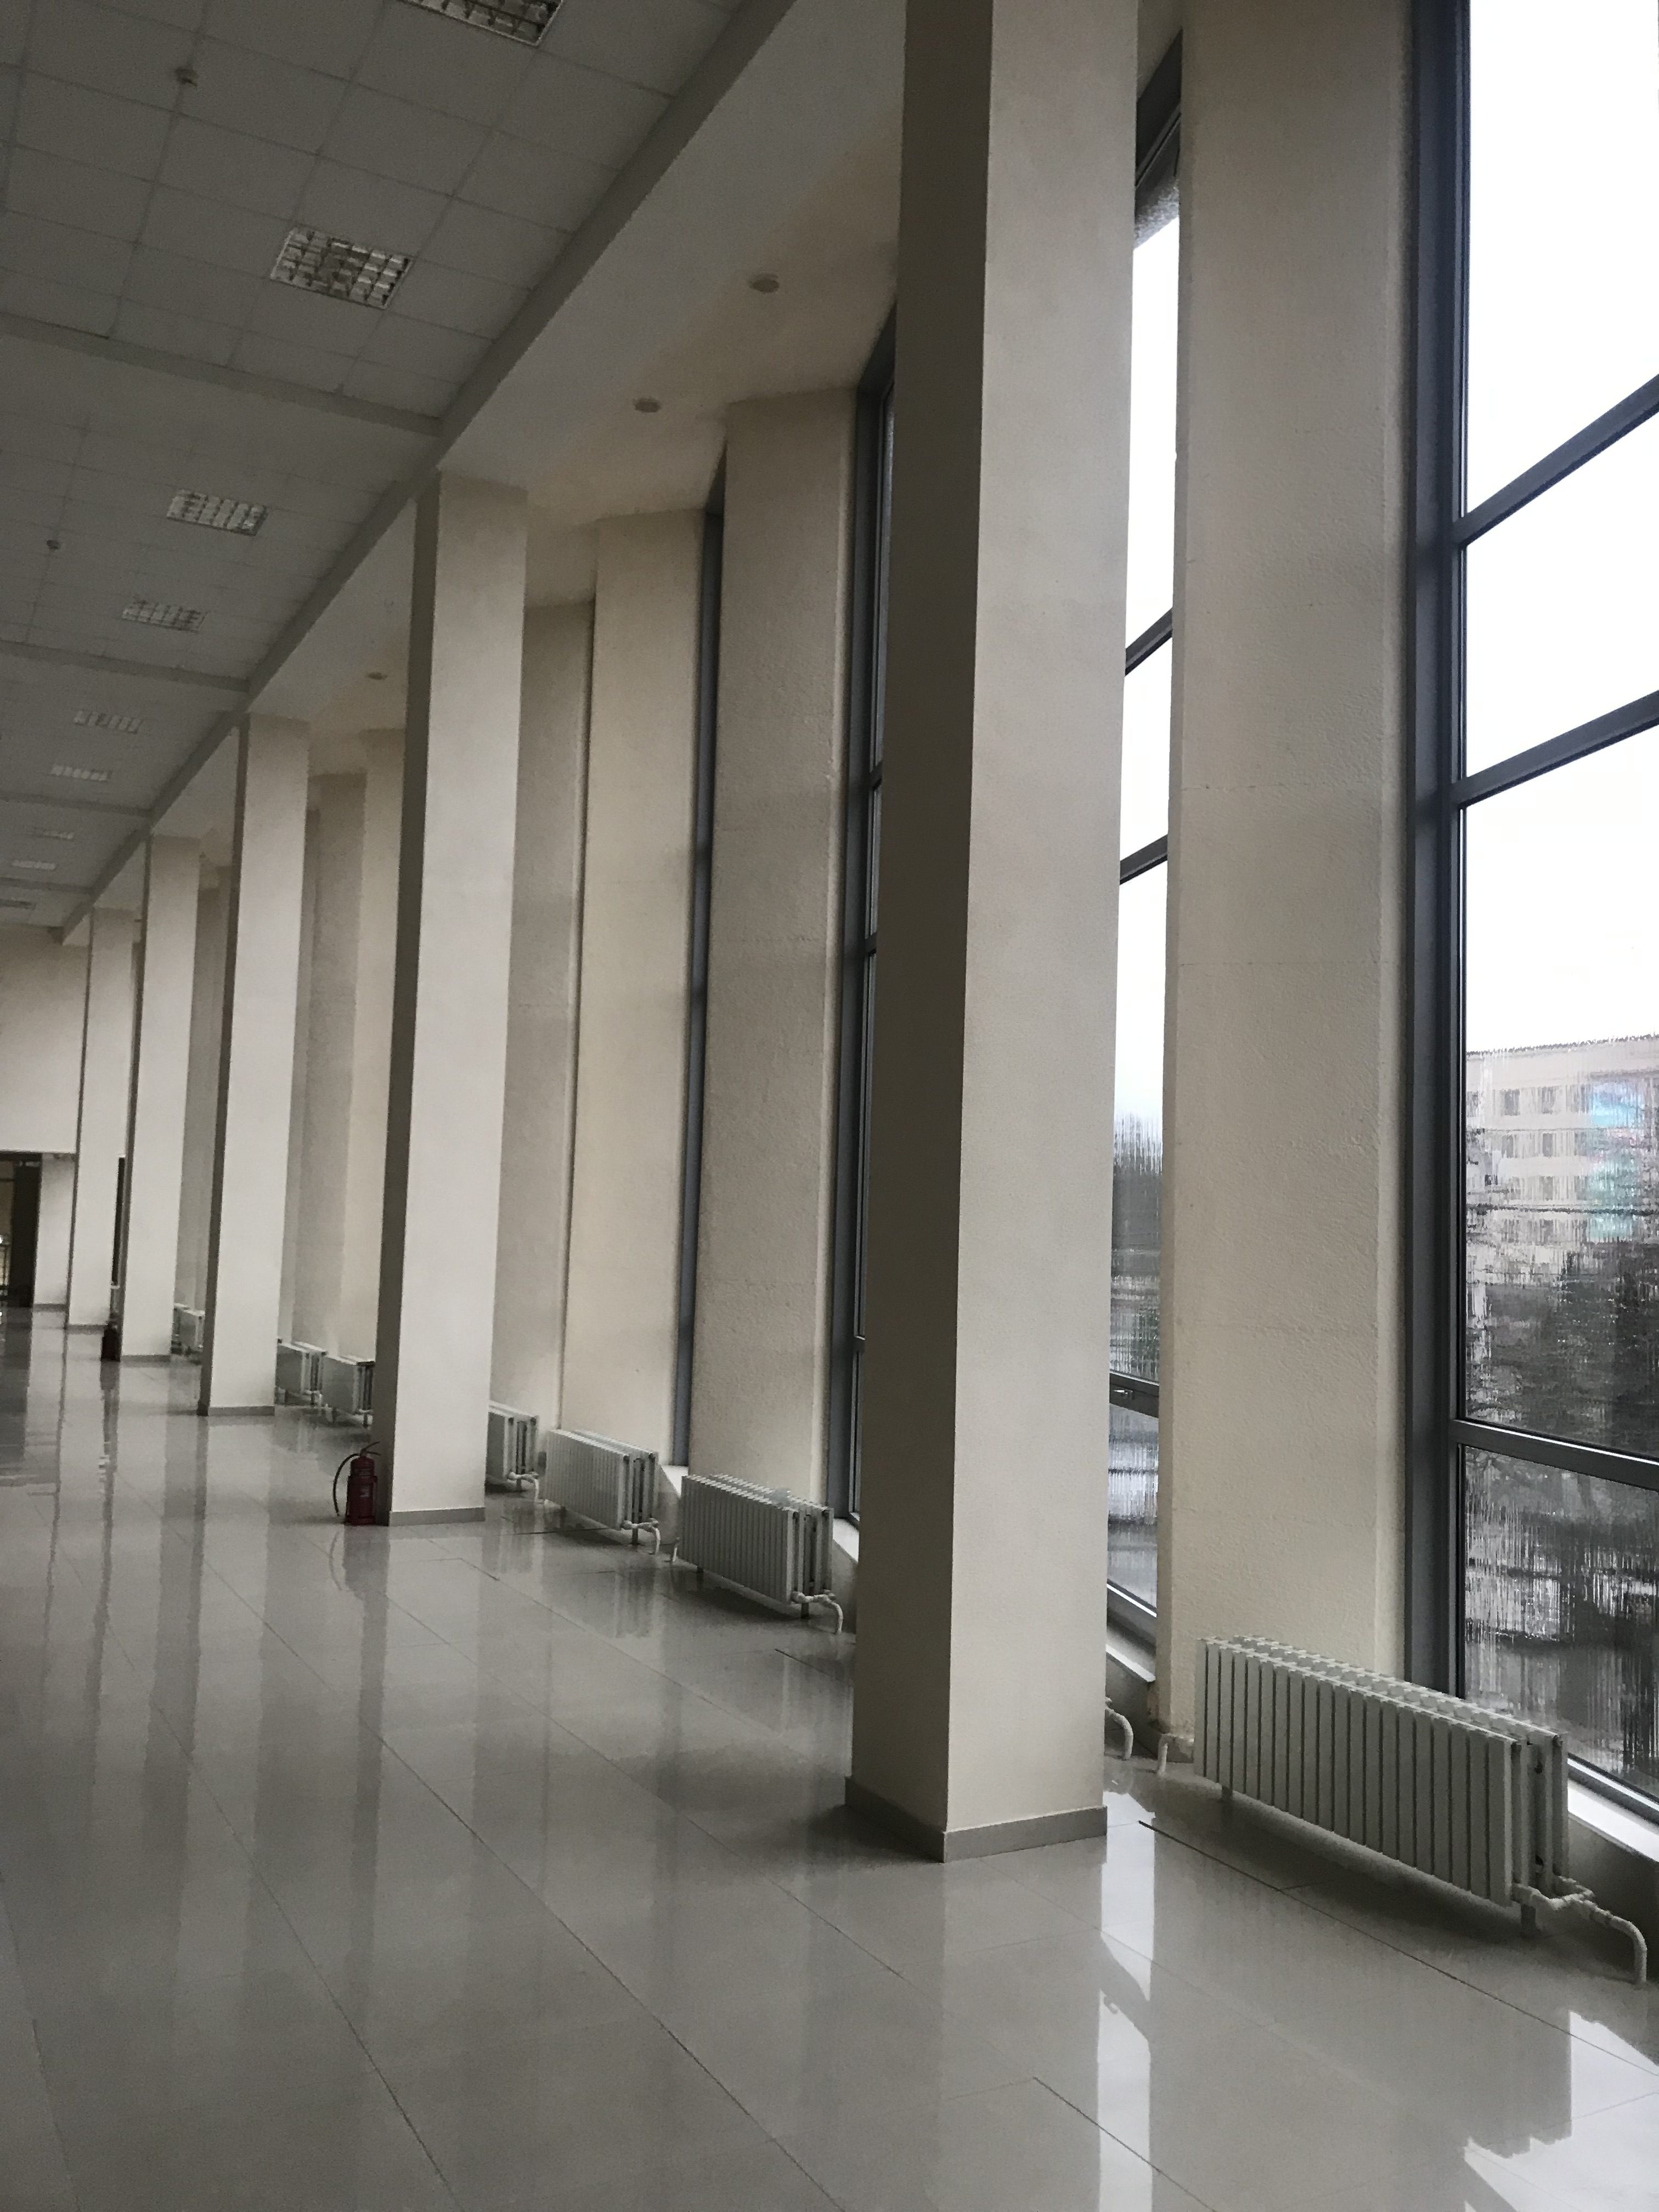 Предлагаем к аренде торговое помещение на втором этаже площадью 1100 м² по ул. Маршала Жукова, д.12, напрямую от собственника._1